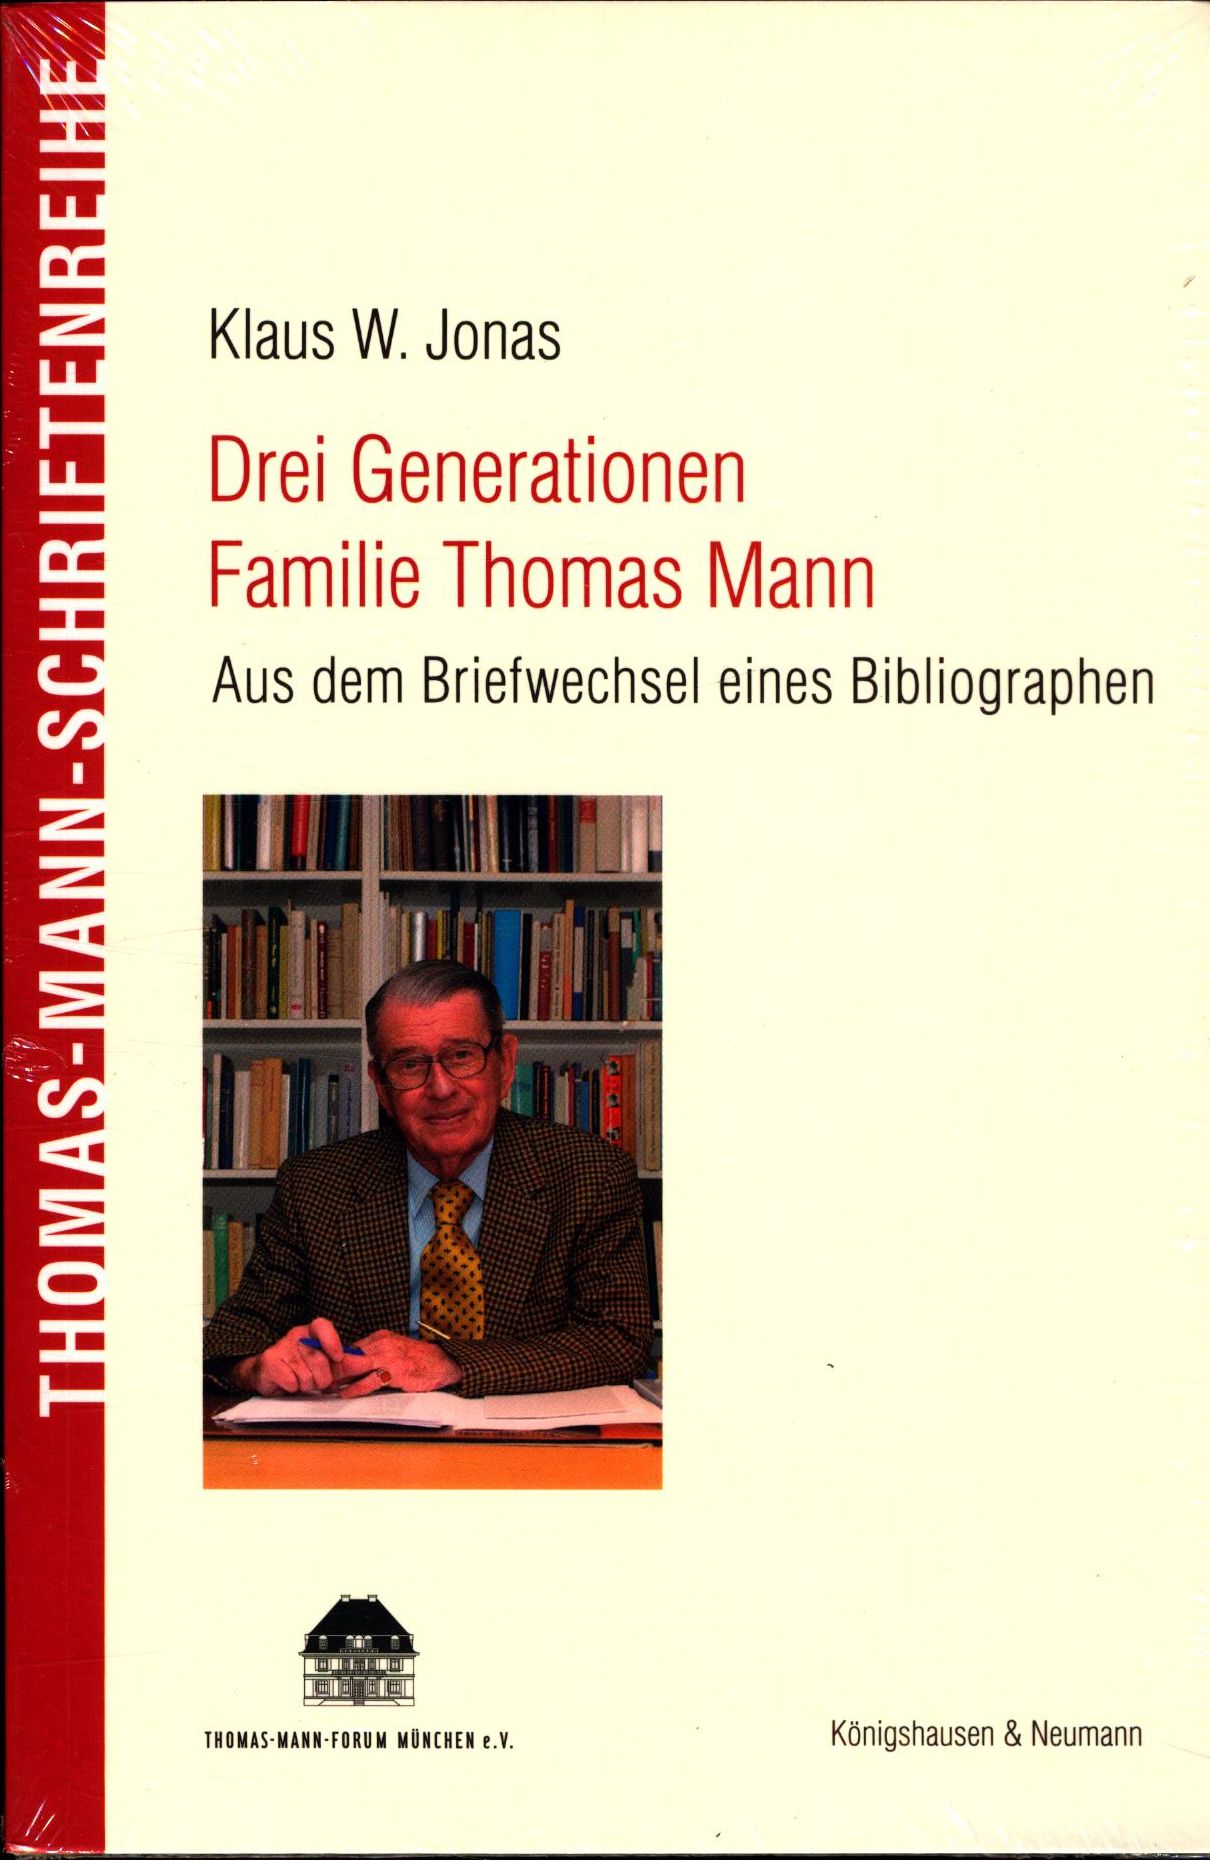 Drei Generationen Familie Thomas Mann Aus dem Briefwechsel eines Bibliographen. (Thomas-Mann-Schriftenreihe) - Heißerer, Dirk, Klaus W. Jonas  und Frido Mann